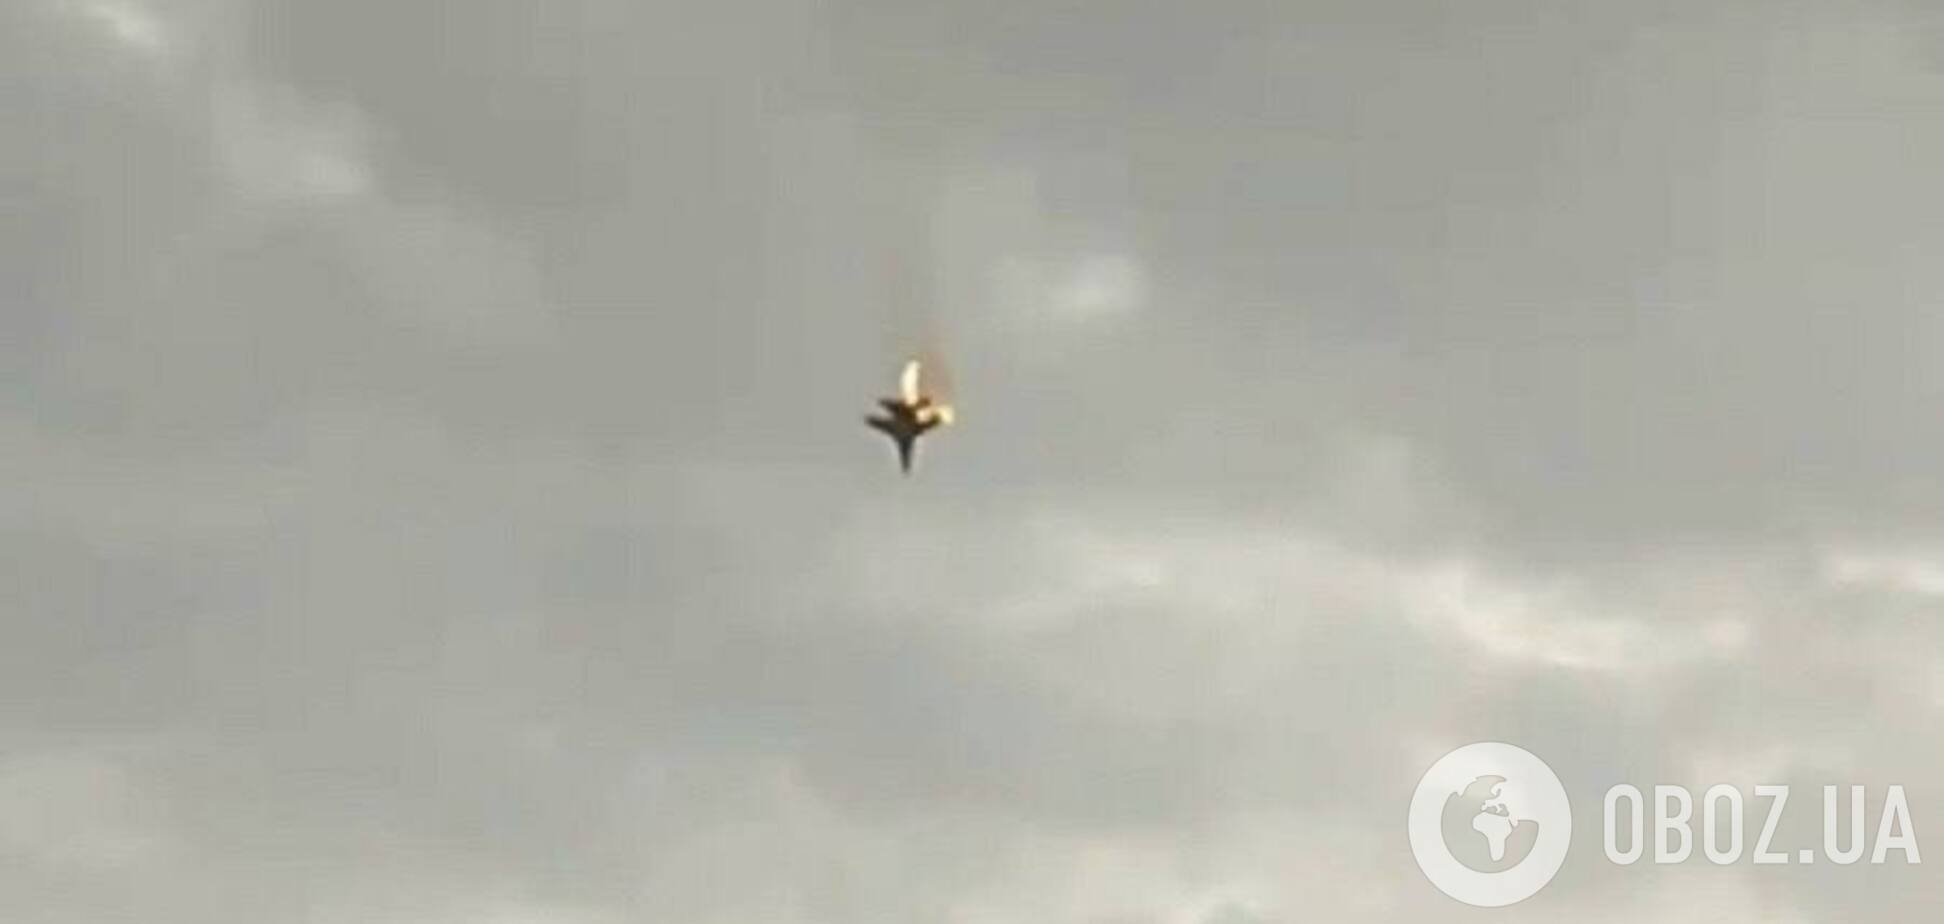 Над Севастополем оккупанты могли сбить свой же самолет: в сети появились видео